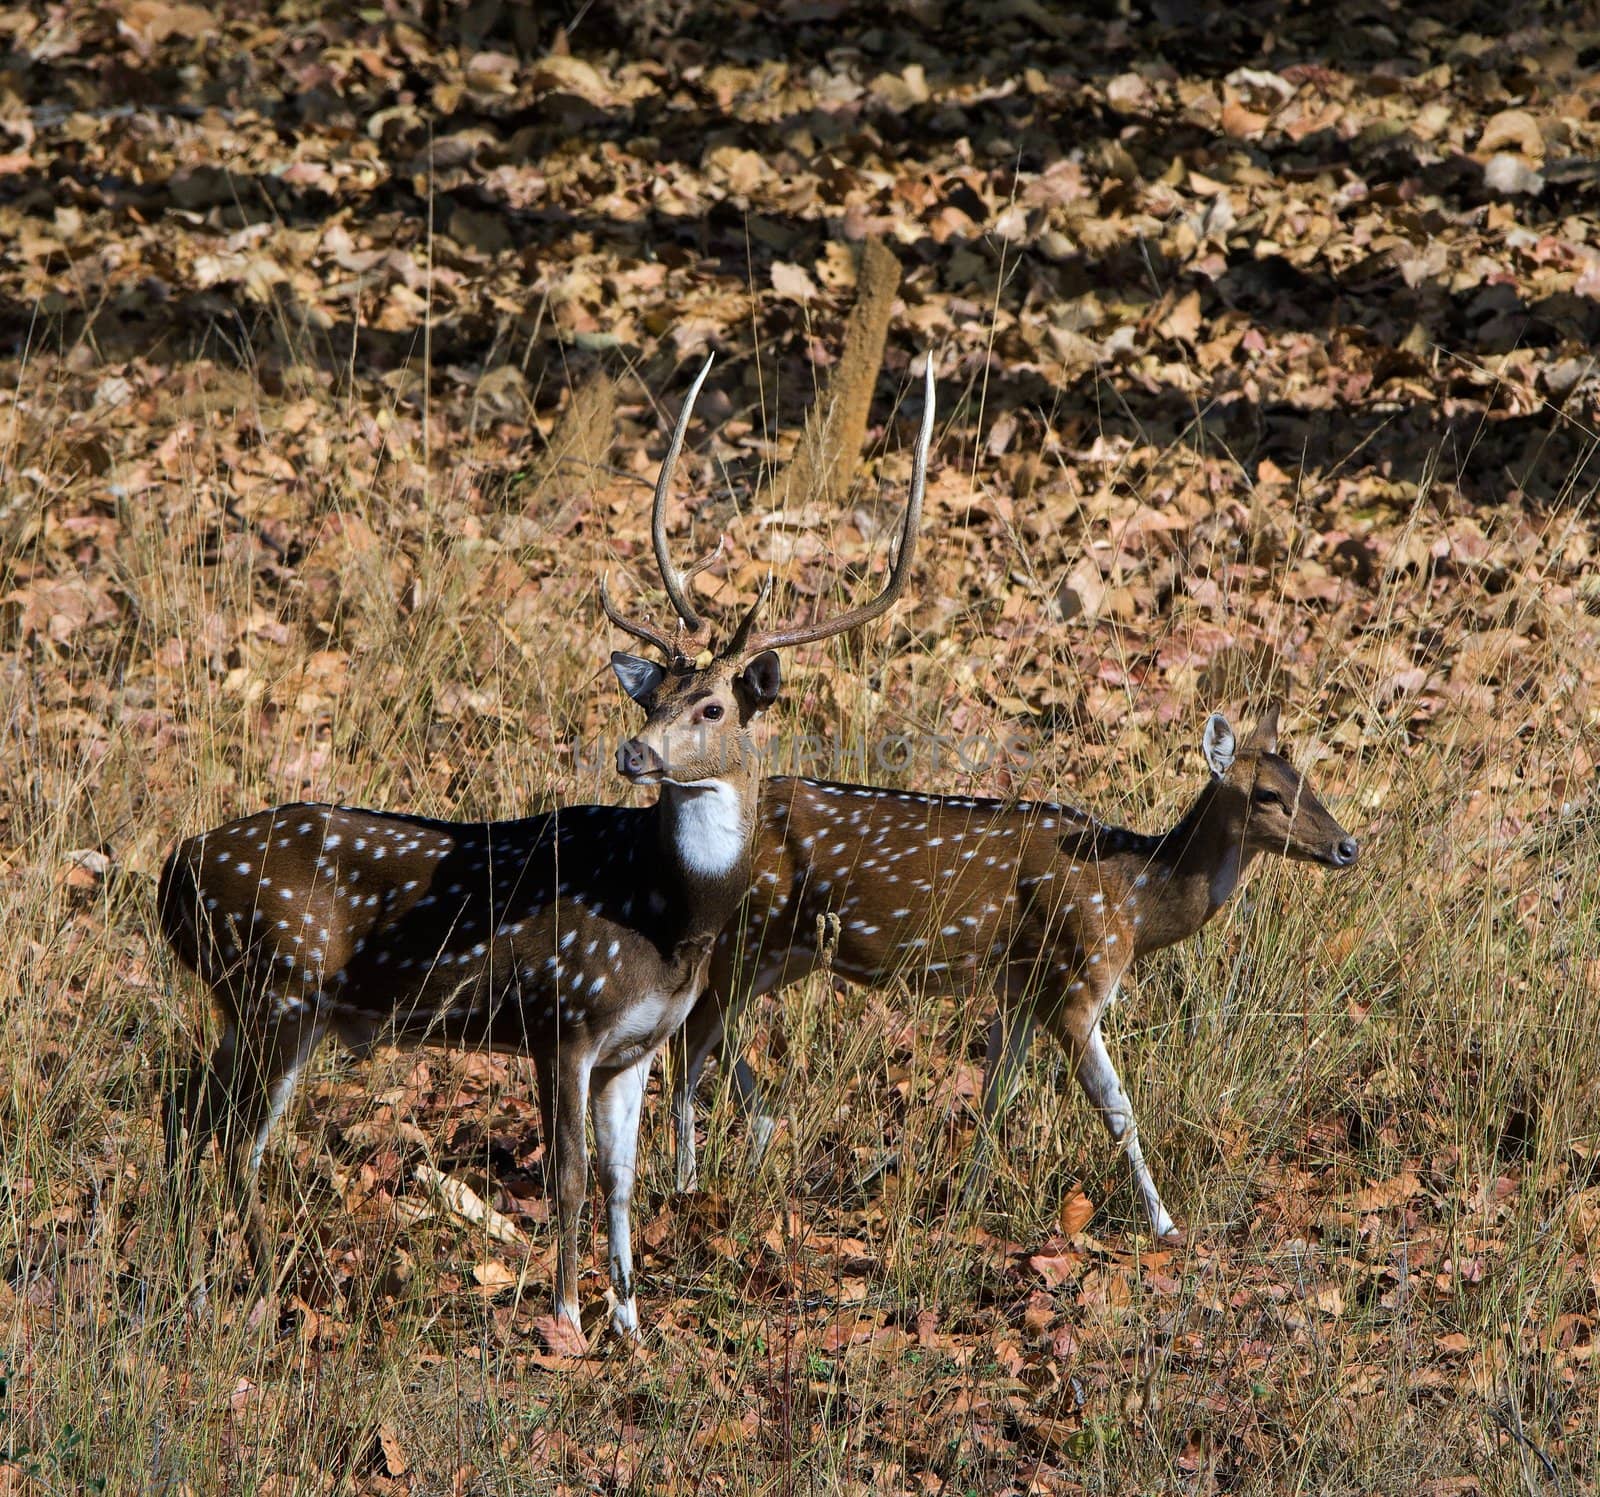 The pair of deer goes on wood. Bandhavgarh. India.